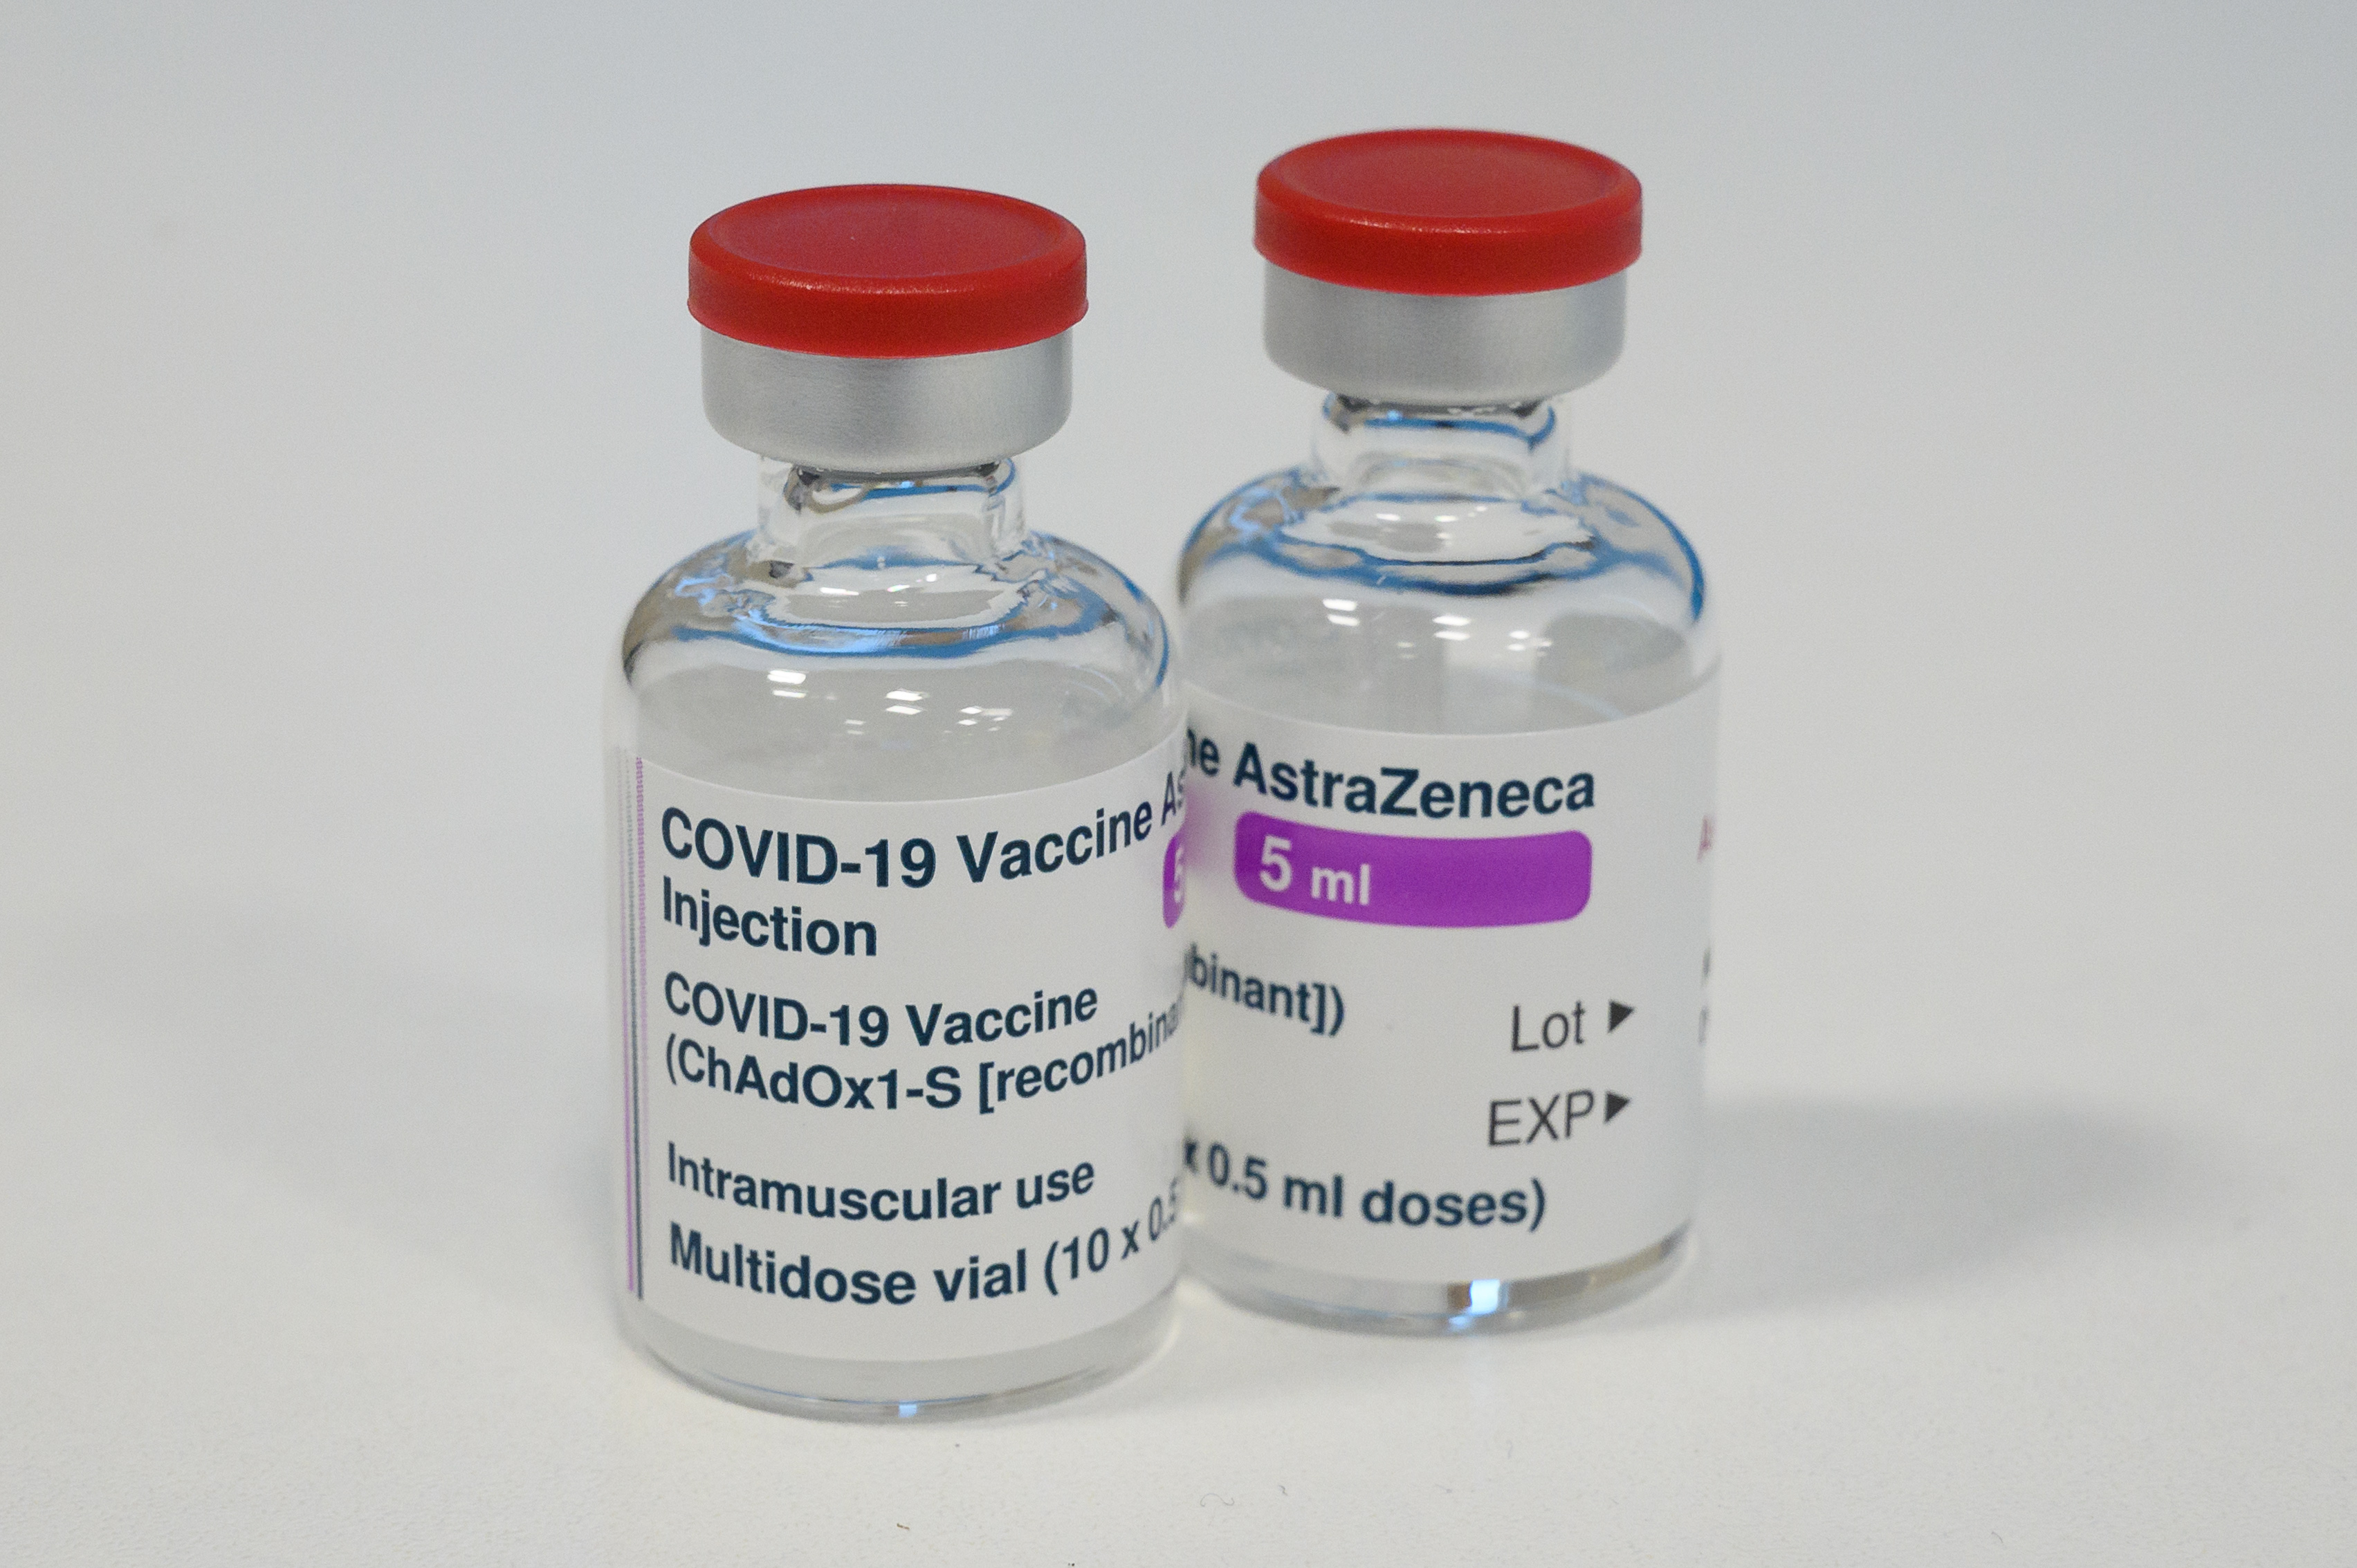 Los viales de la vacuna AstraZeneca COVID-19 se ven en el edificio Sir Ludwig Guttmann el 7 de enero de 2021 en Londres, Inglaterra.